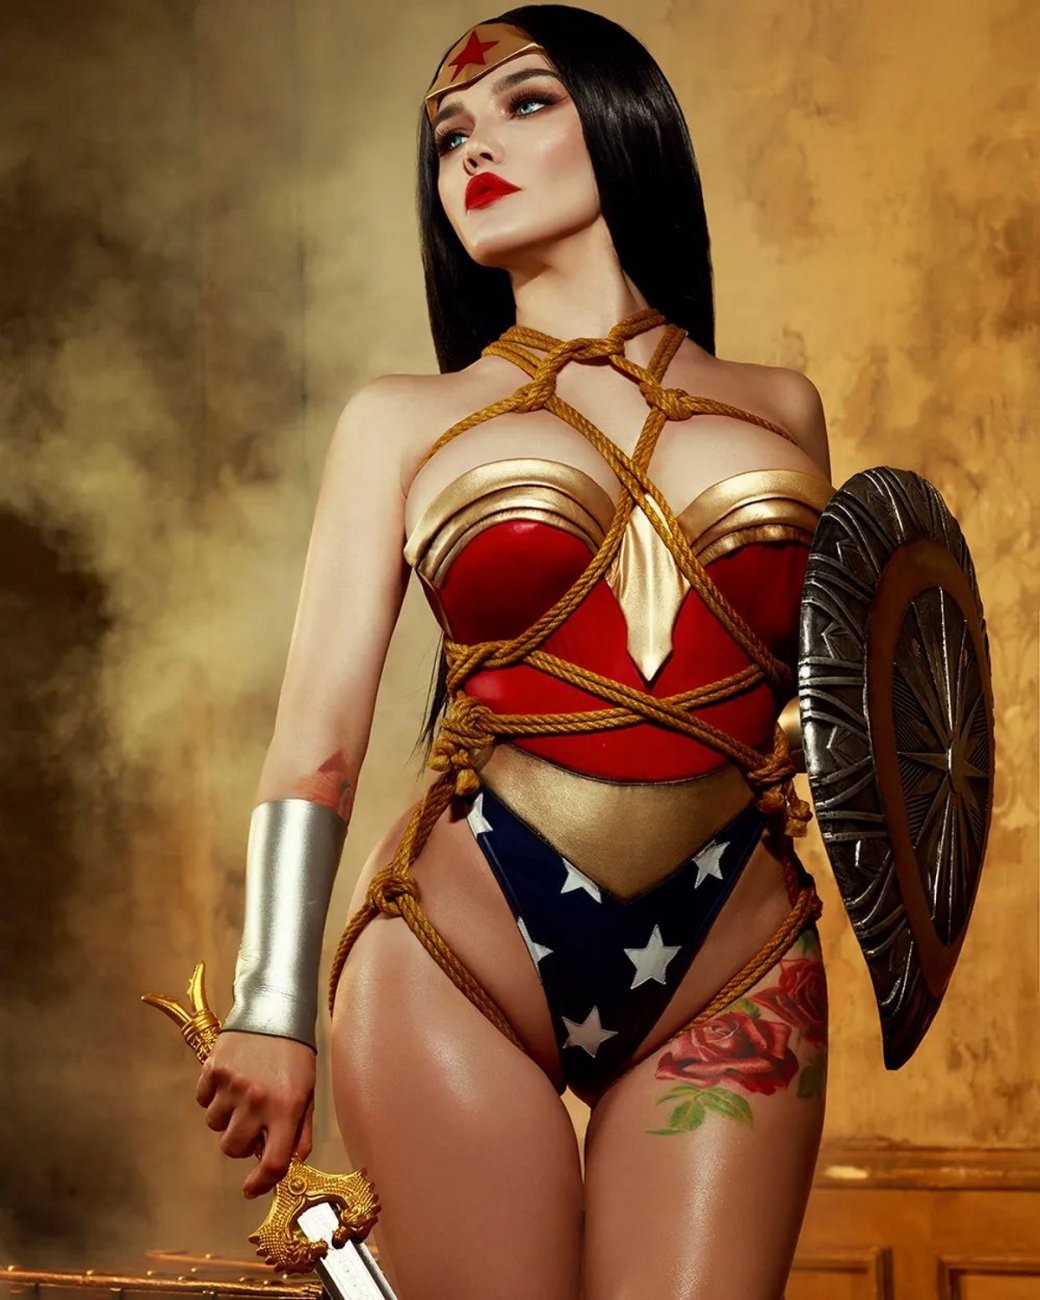 Галерея Модель сделала провокационный косплей на Чудо-женщину из DC Comics - 4 фото